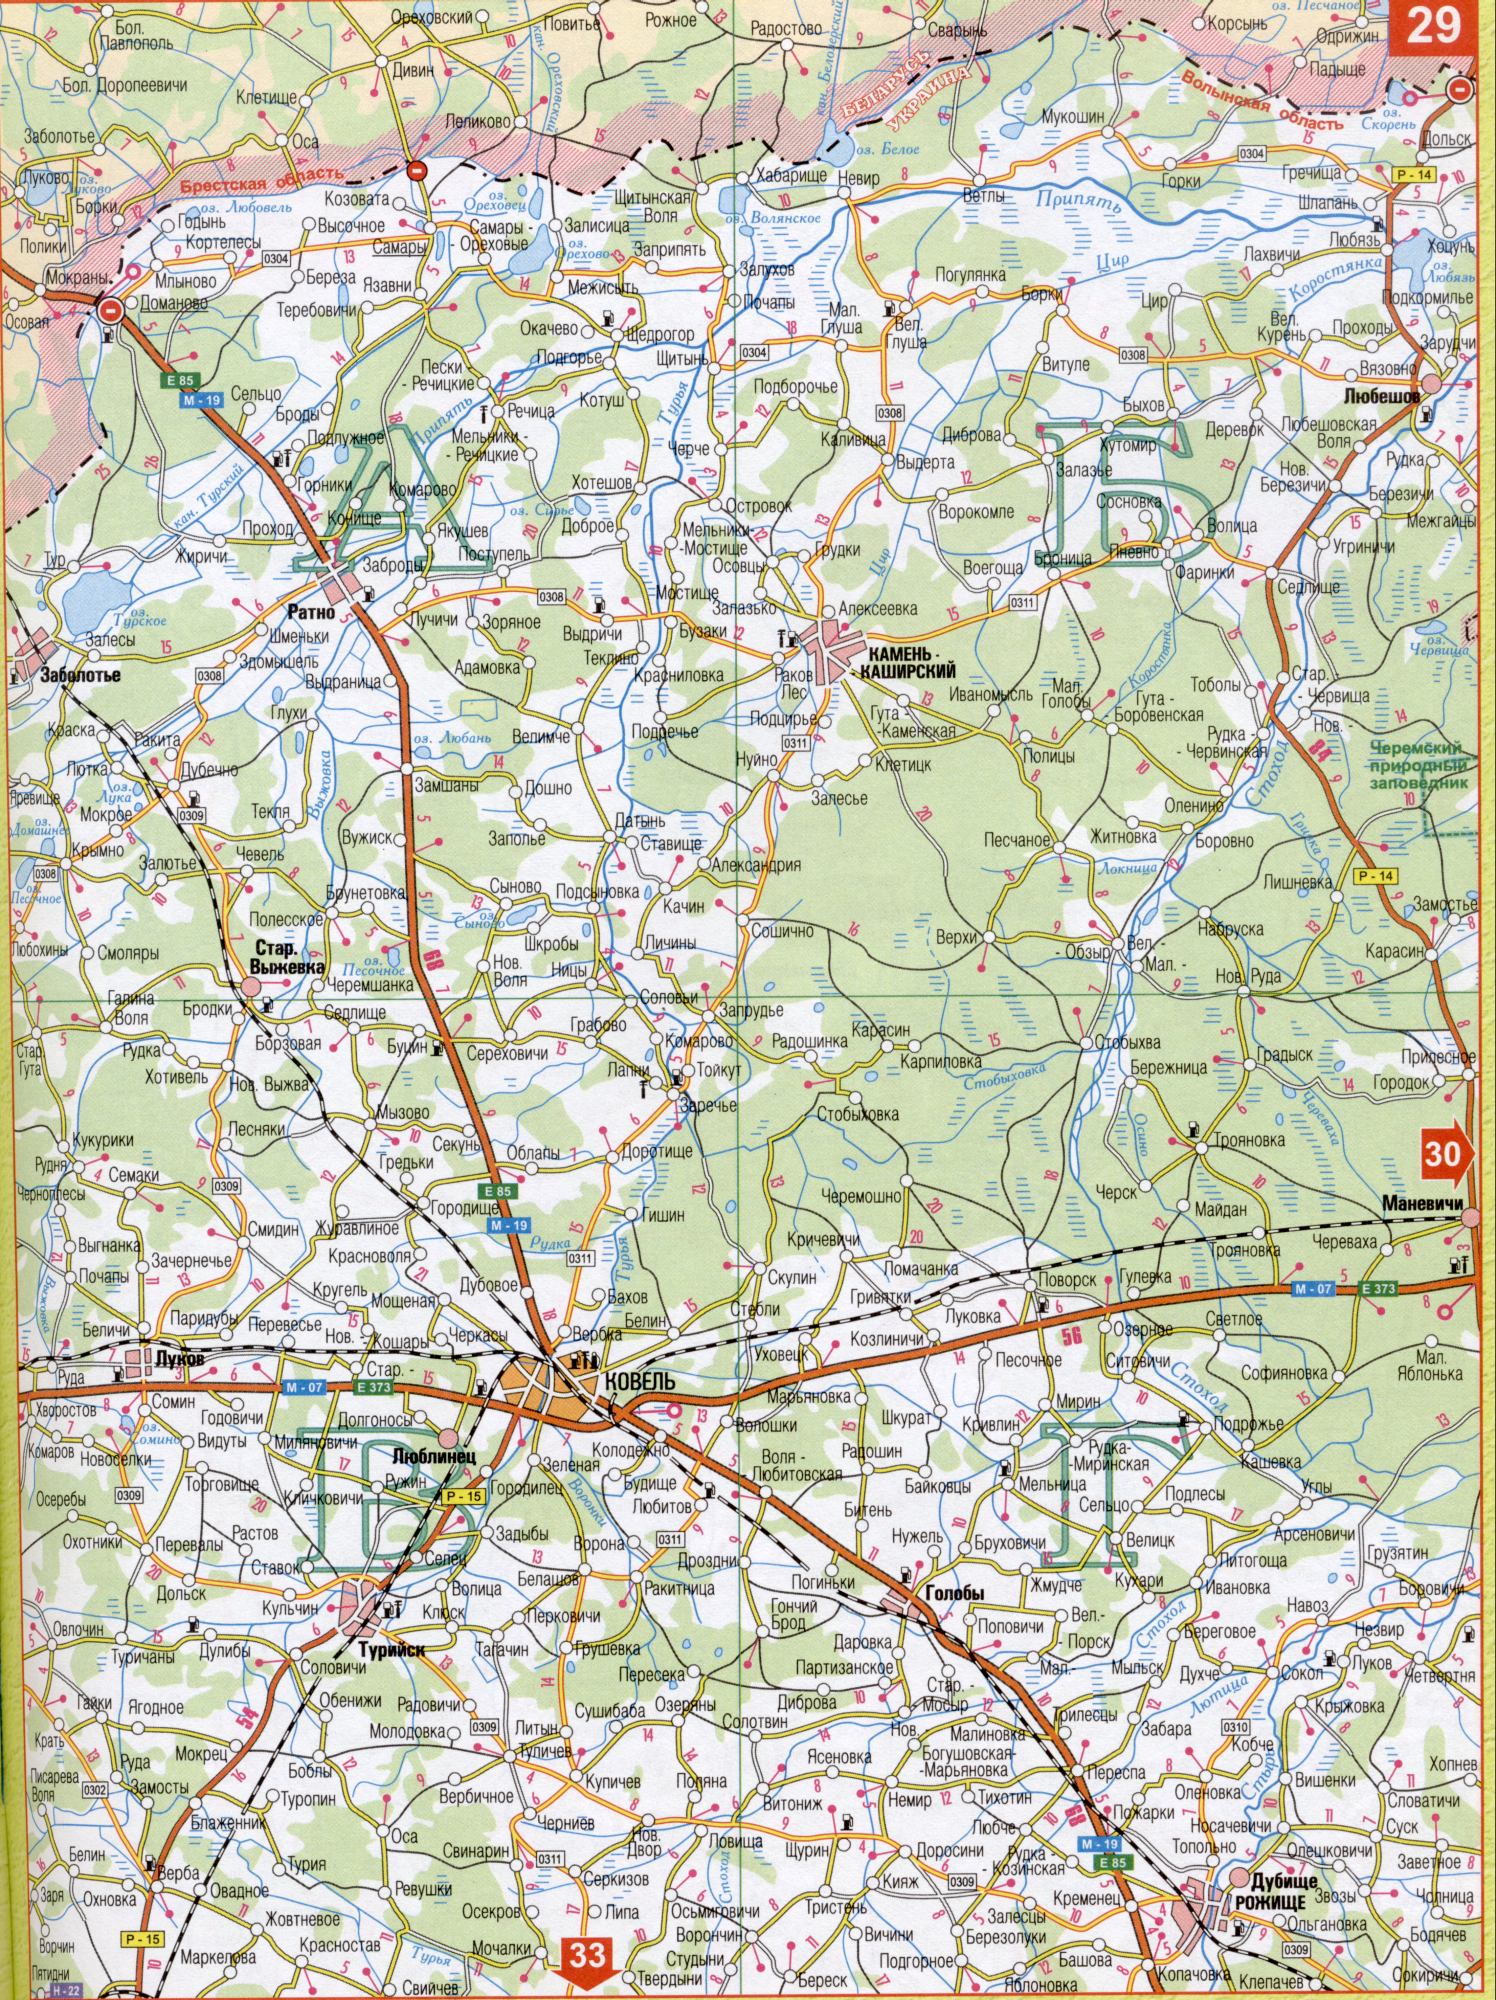 Карта Волынской области Украины масштаба 1см - 5км. Подробная карта авто дорог - Волынская область. Скачать бесплатно , B0